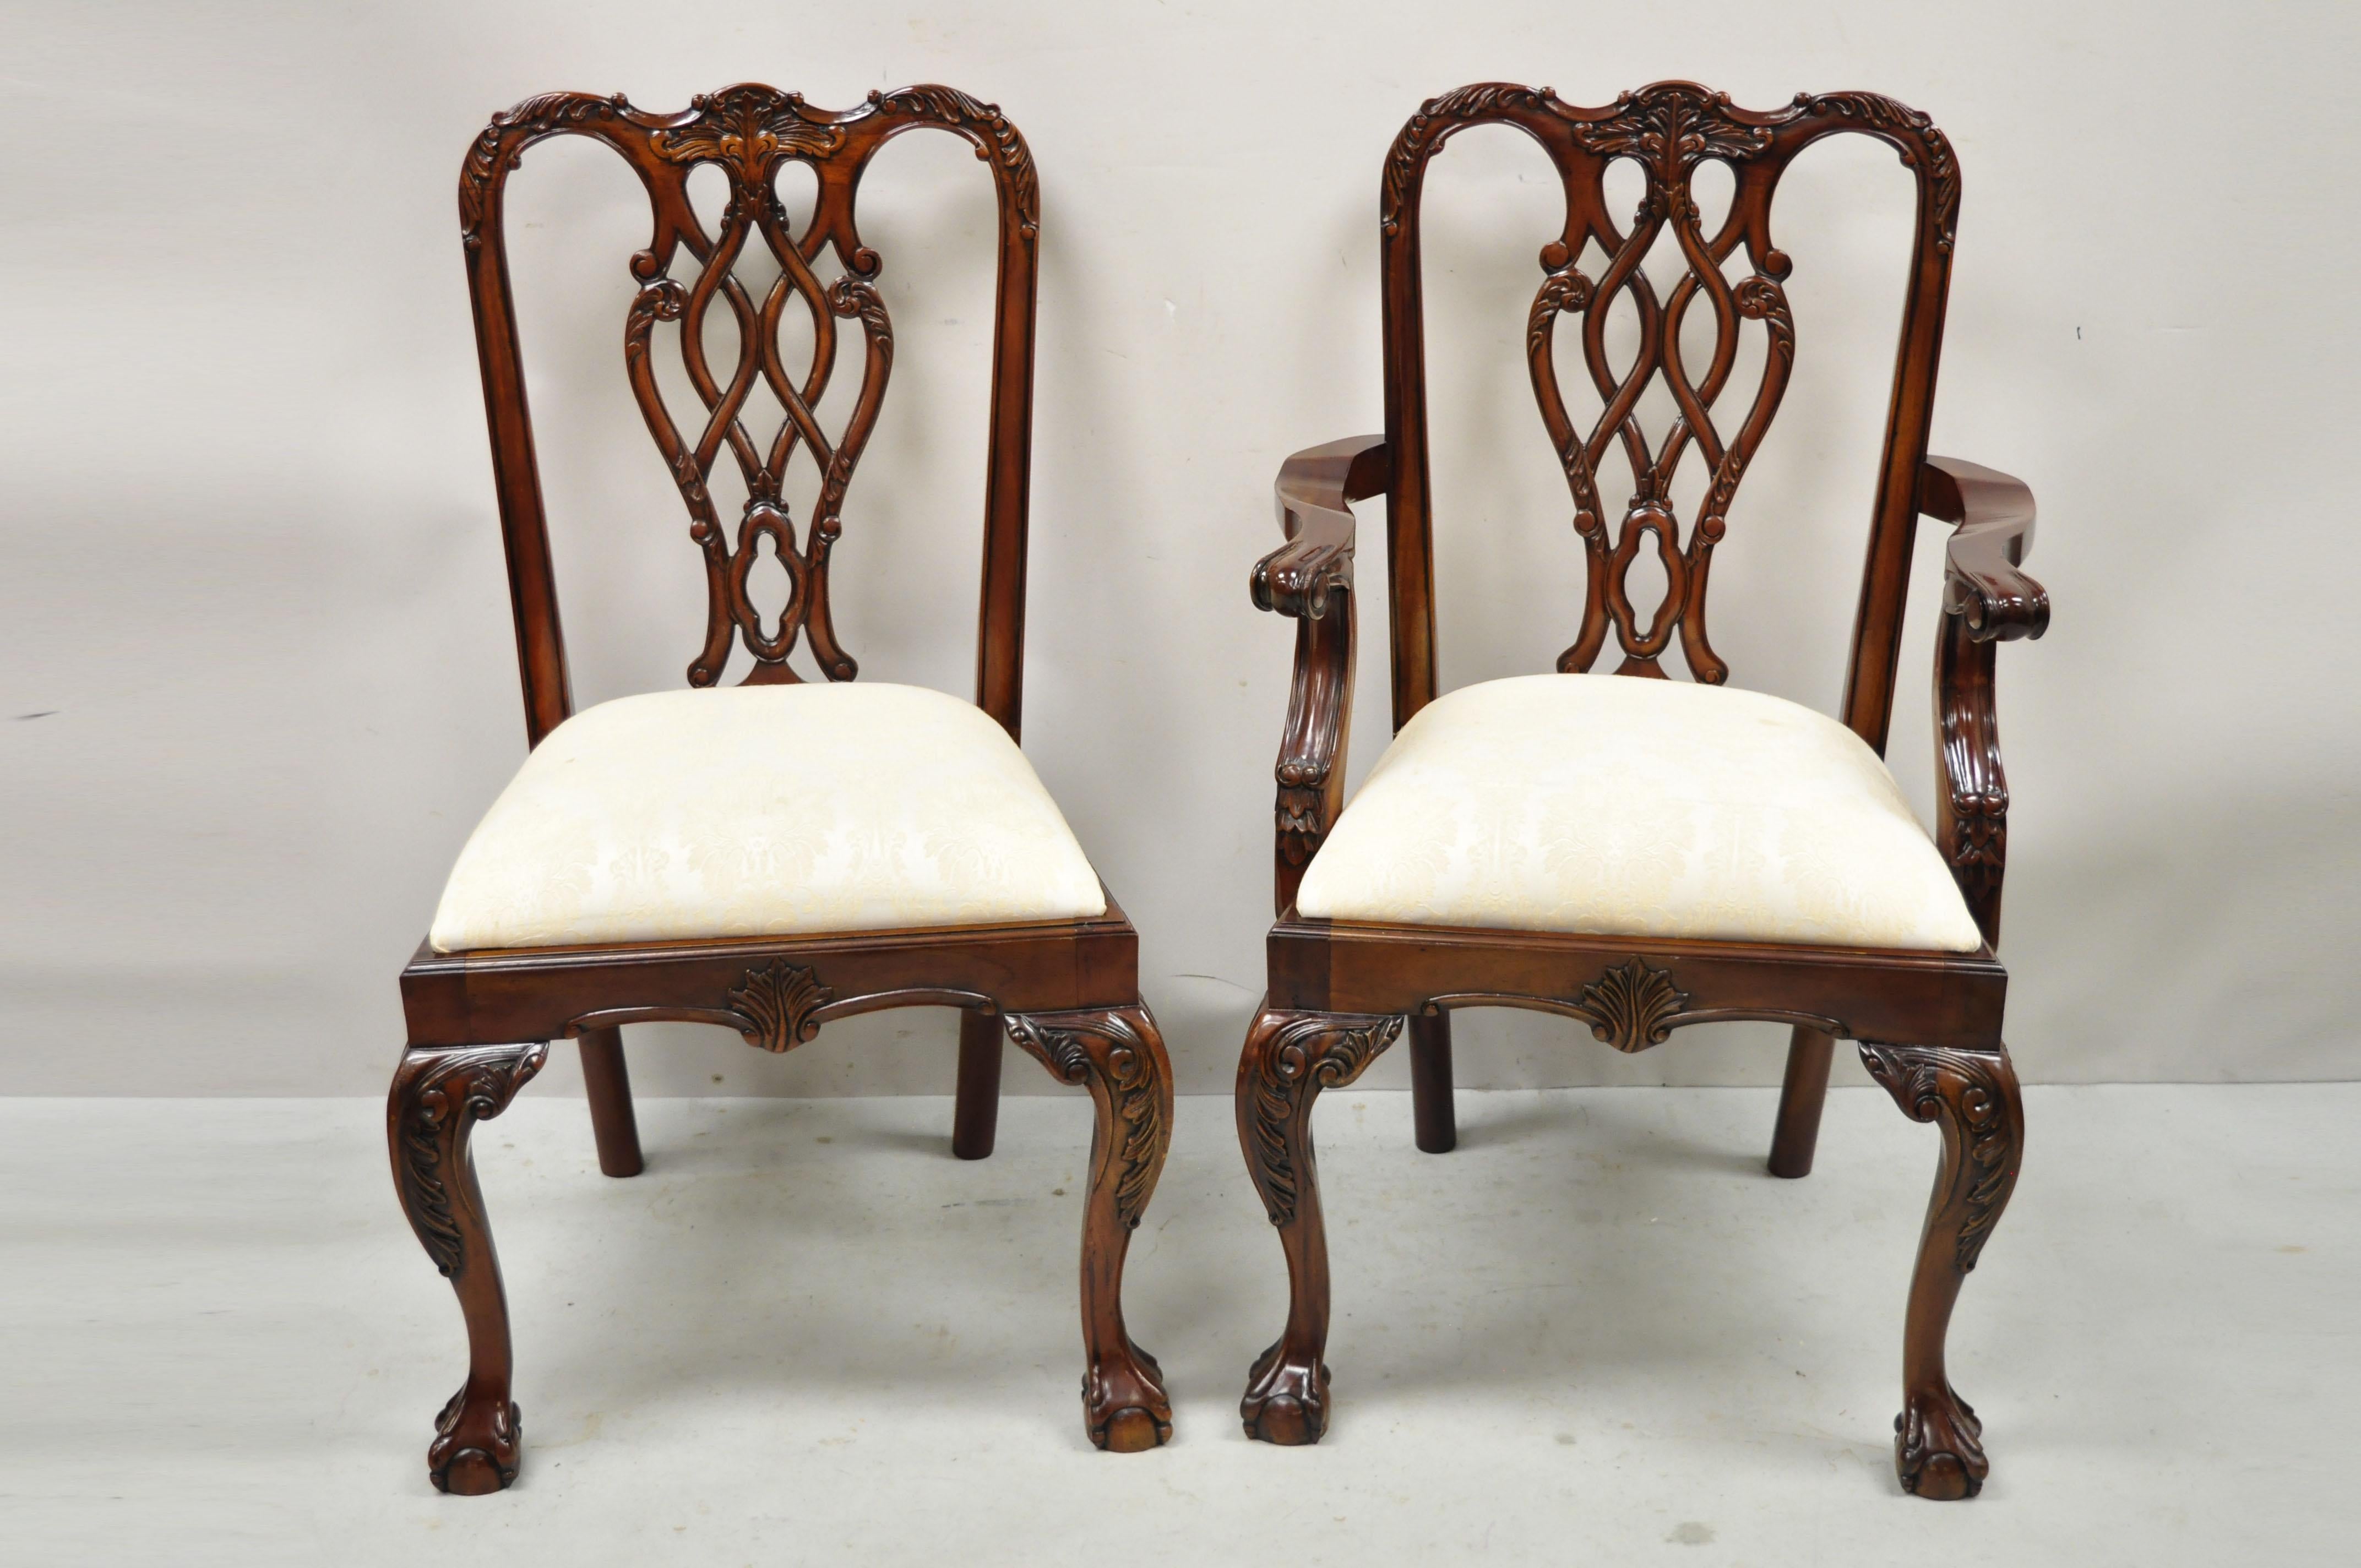 Chaises de salle à manger en acajou sculpté de style Chippendale - Ensemble de 8 chaises. 2 fauteuils, 6 chaises d'appoint, cadres en bois massif, beau grain de bois, détails joliment sculptés, pieds sculptés en forme de boule et de griffe, très bel